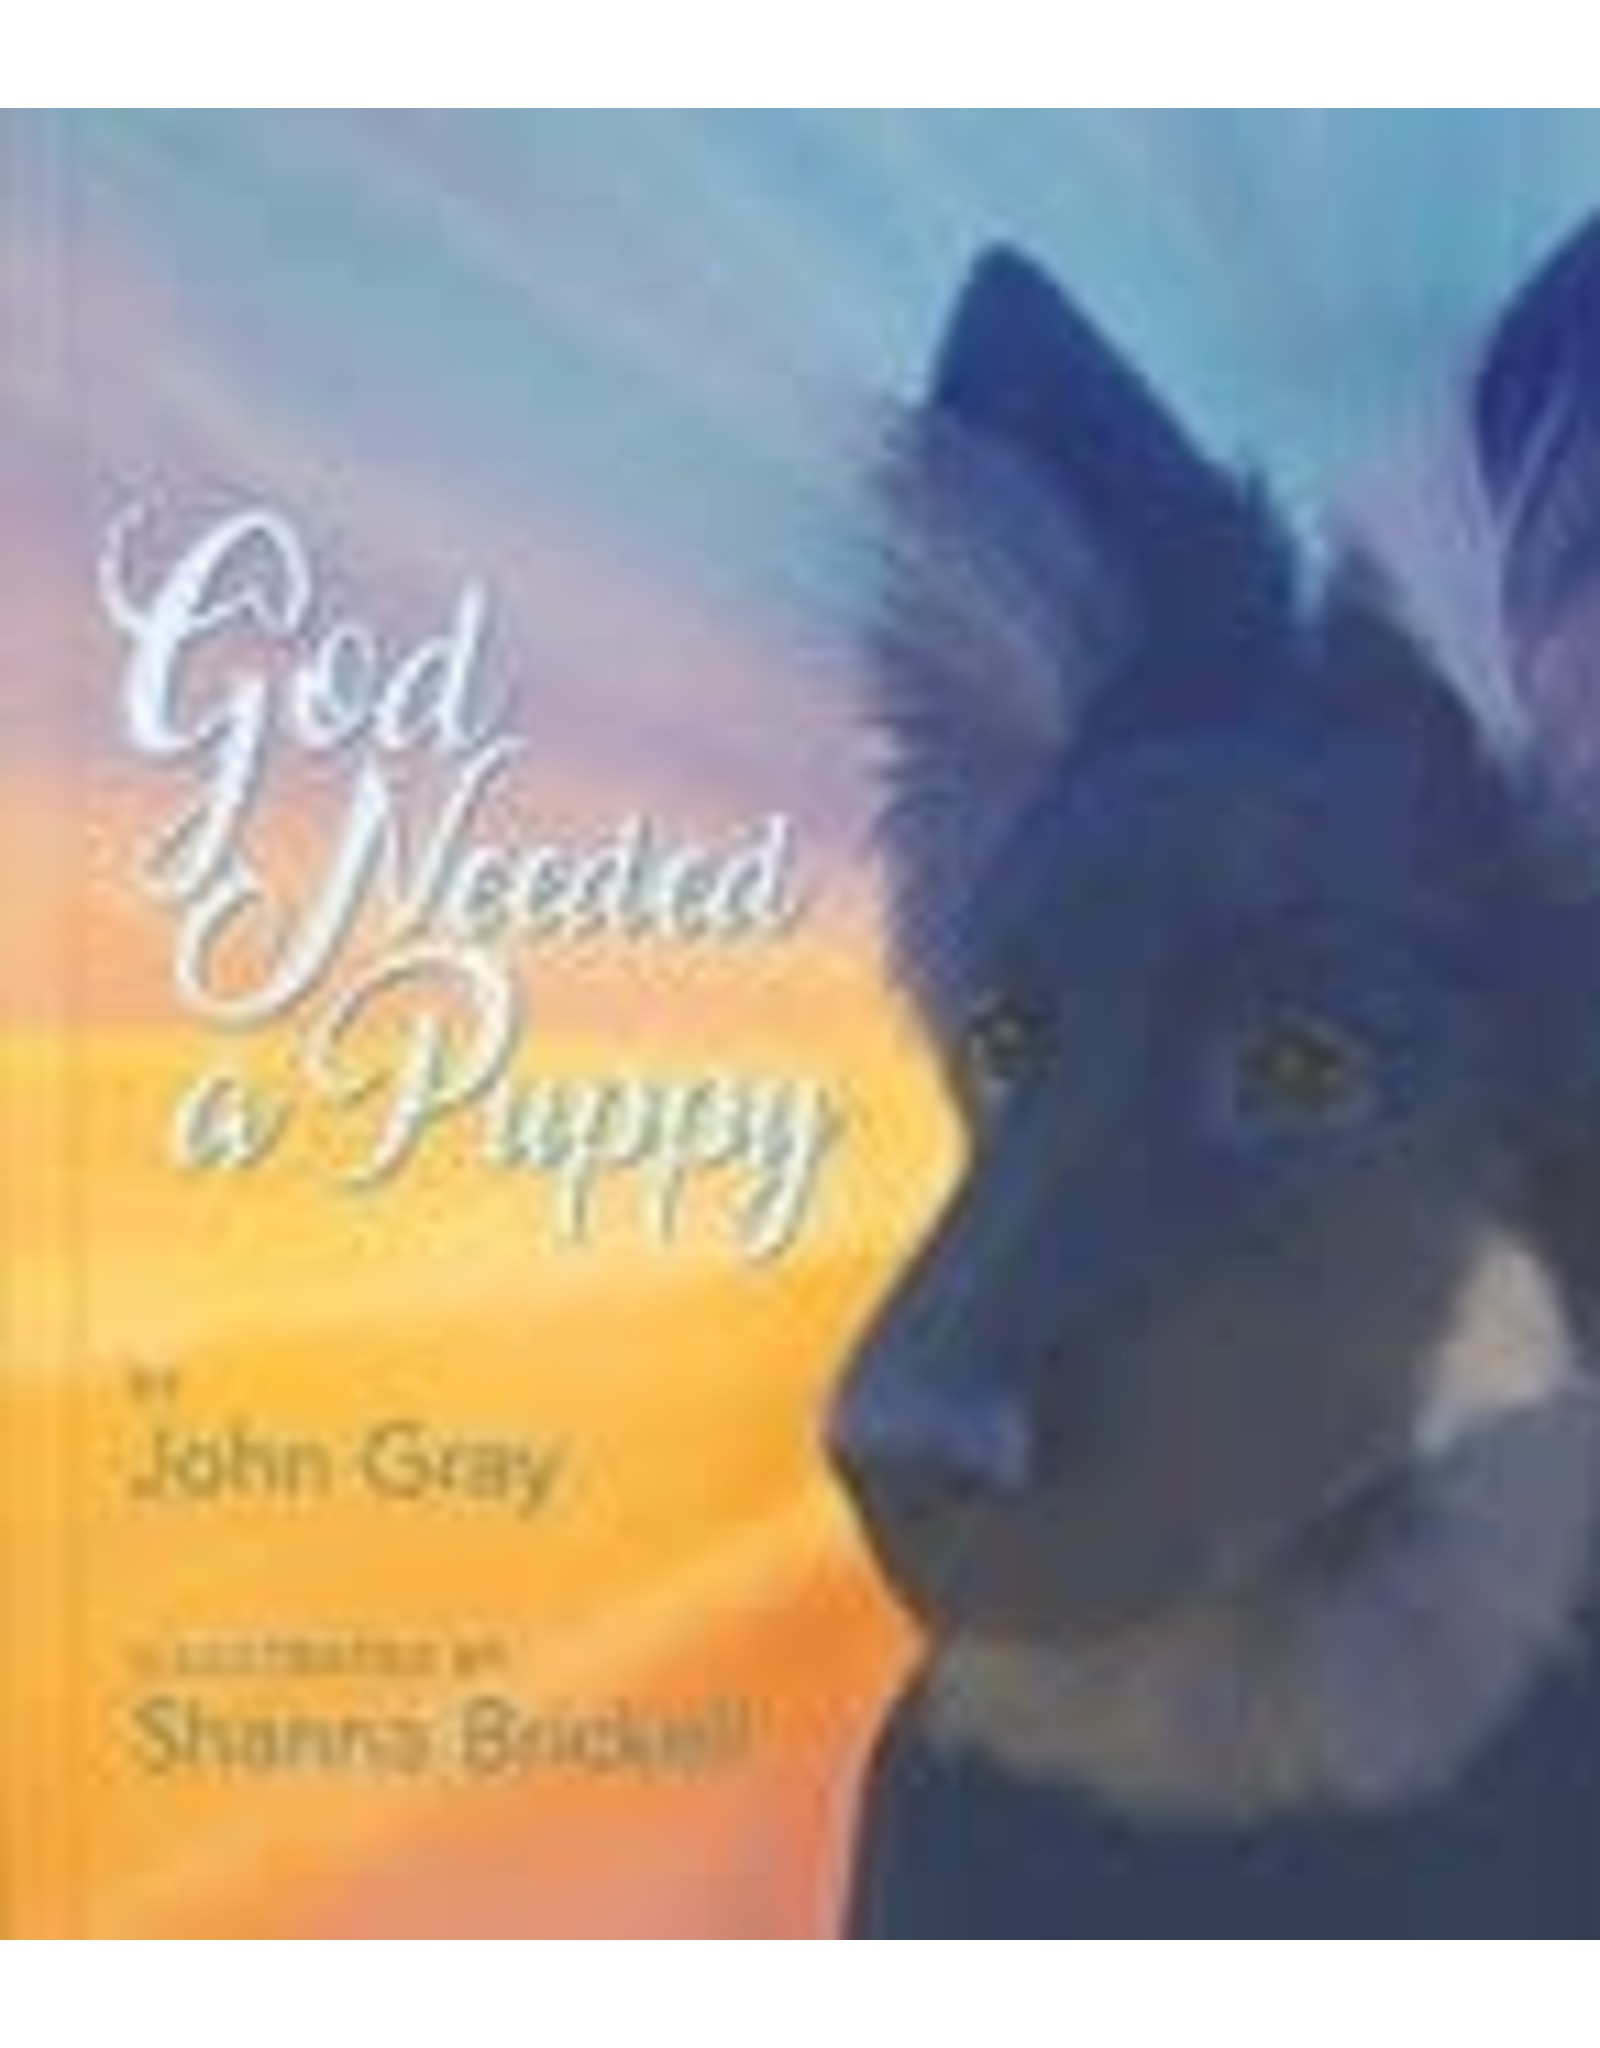 Paraclete Press God Needed a Puppy - John Gray